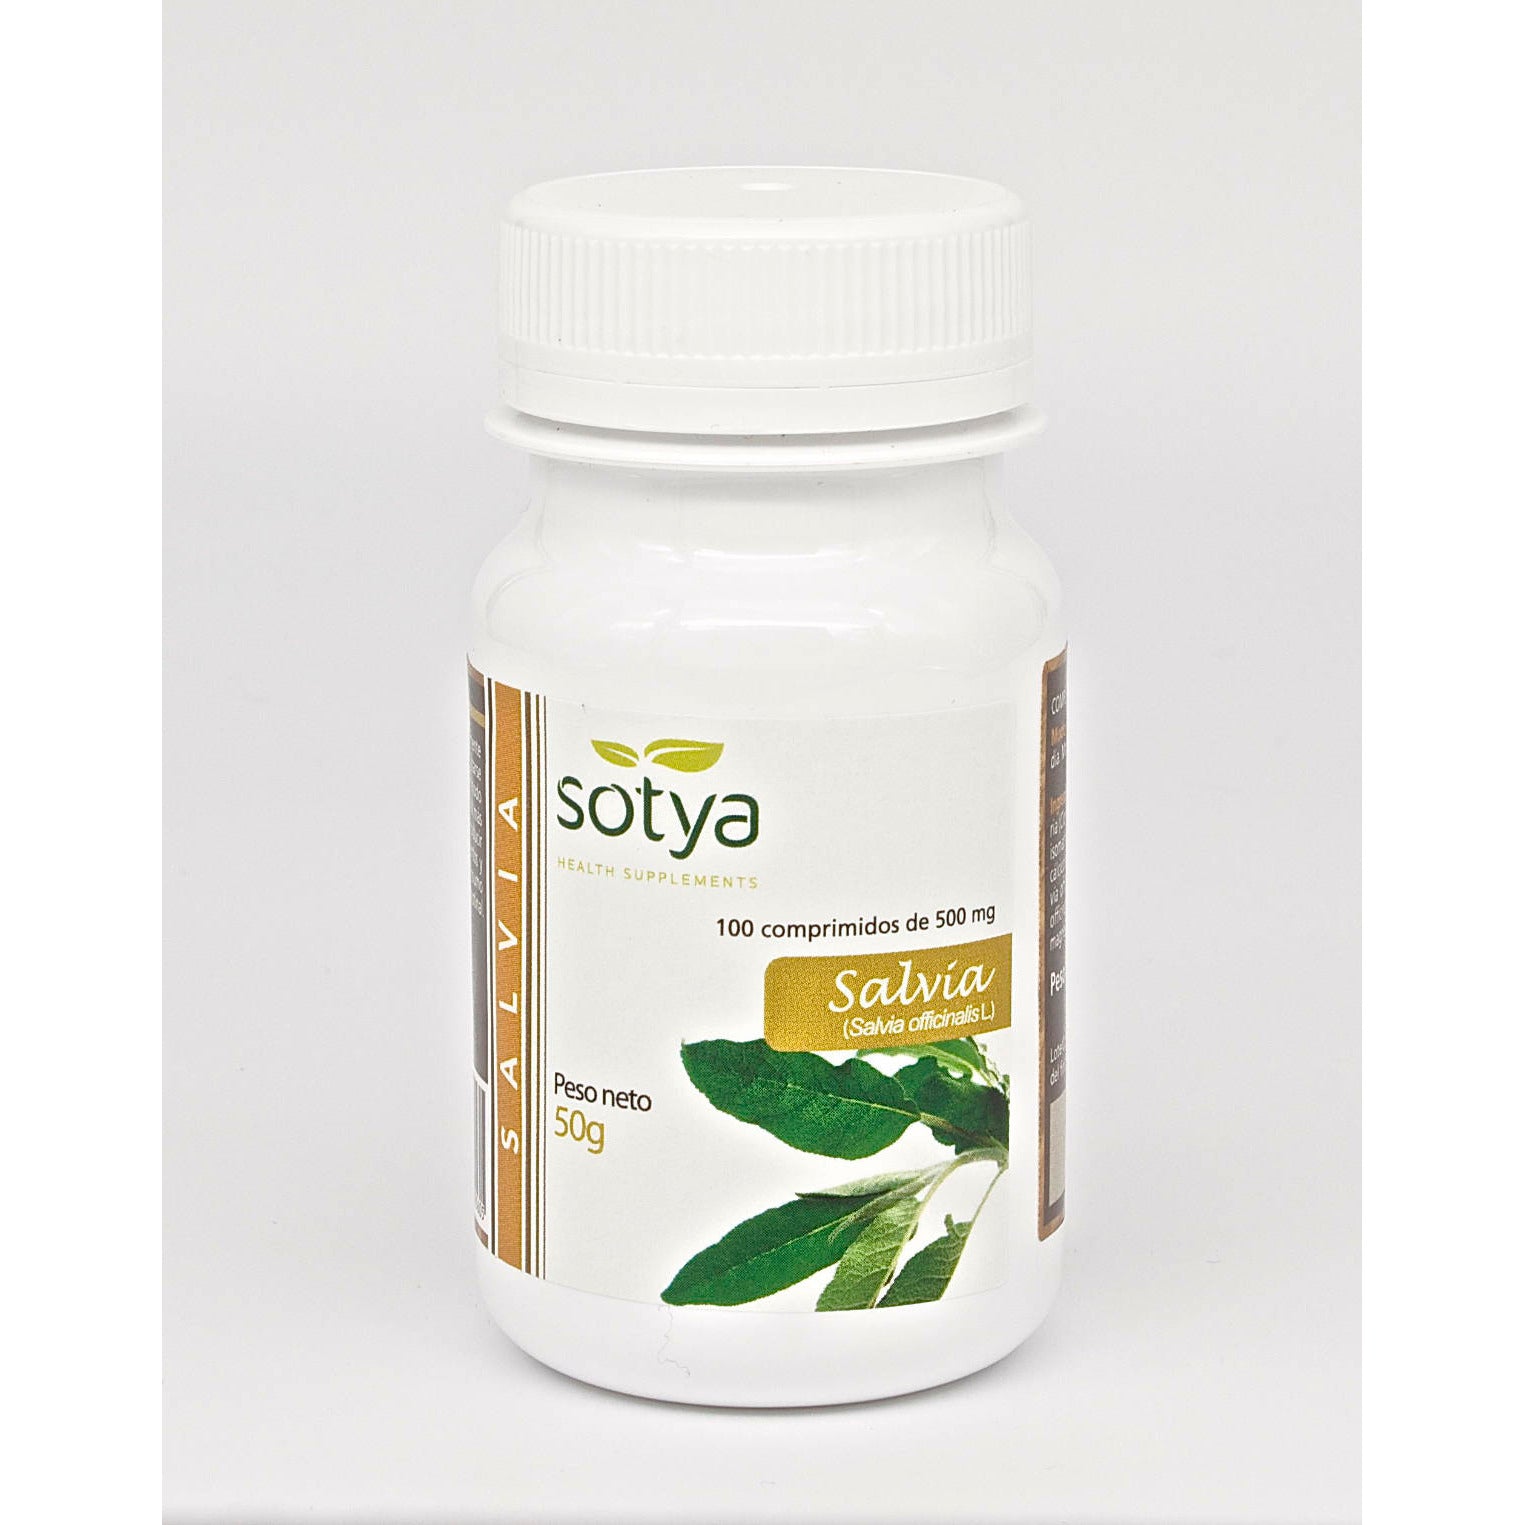 Sotya-Salvia-100-Comprimidos-Biopharmacia,-Parafarmacia-online